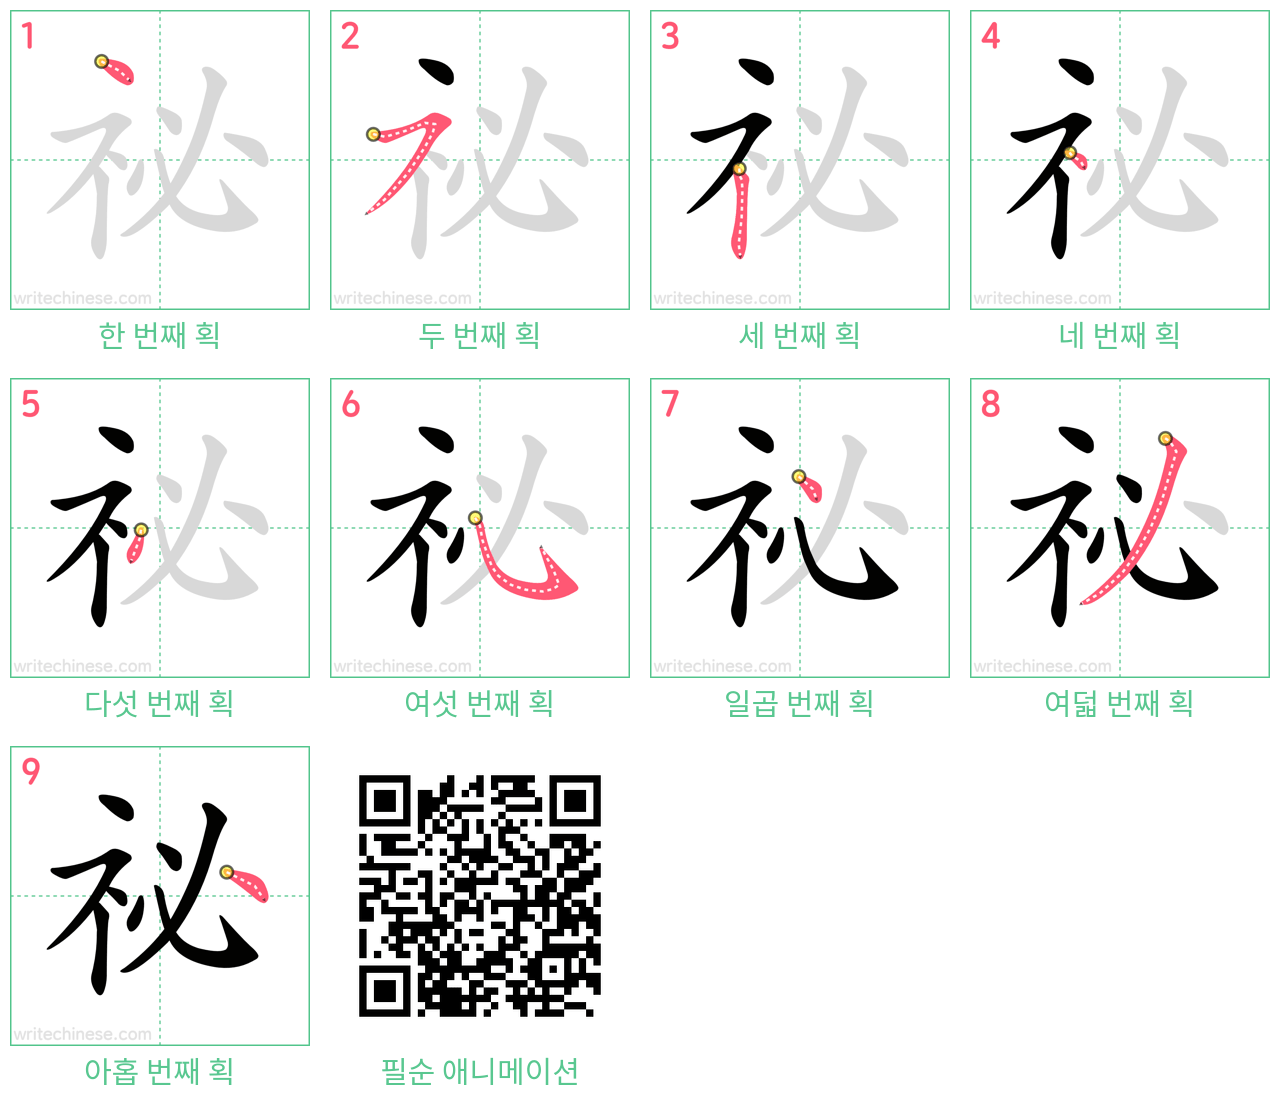 祕 step-by-step stroke order diagrams